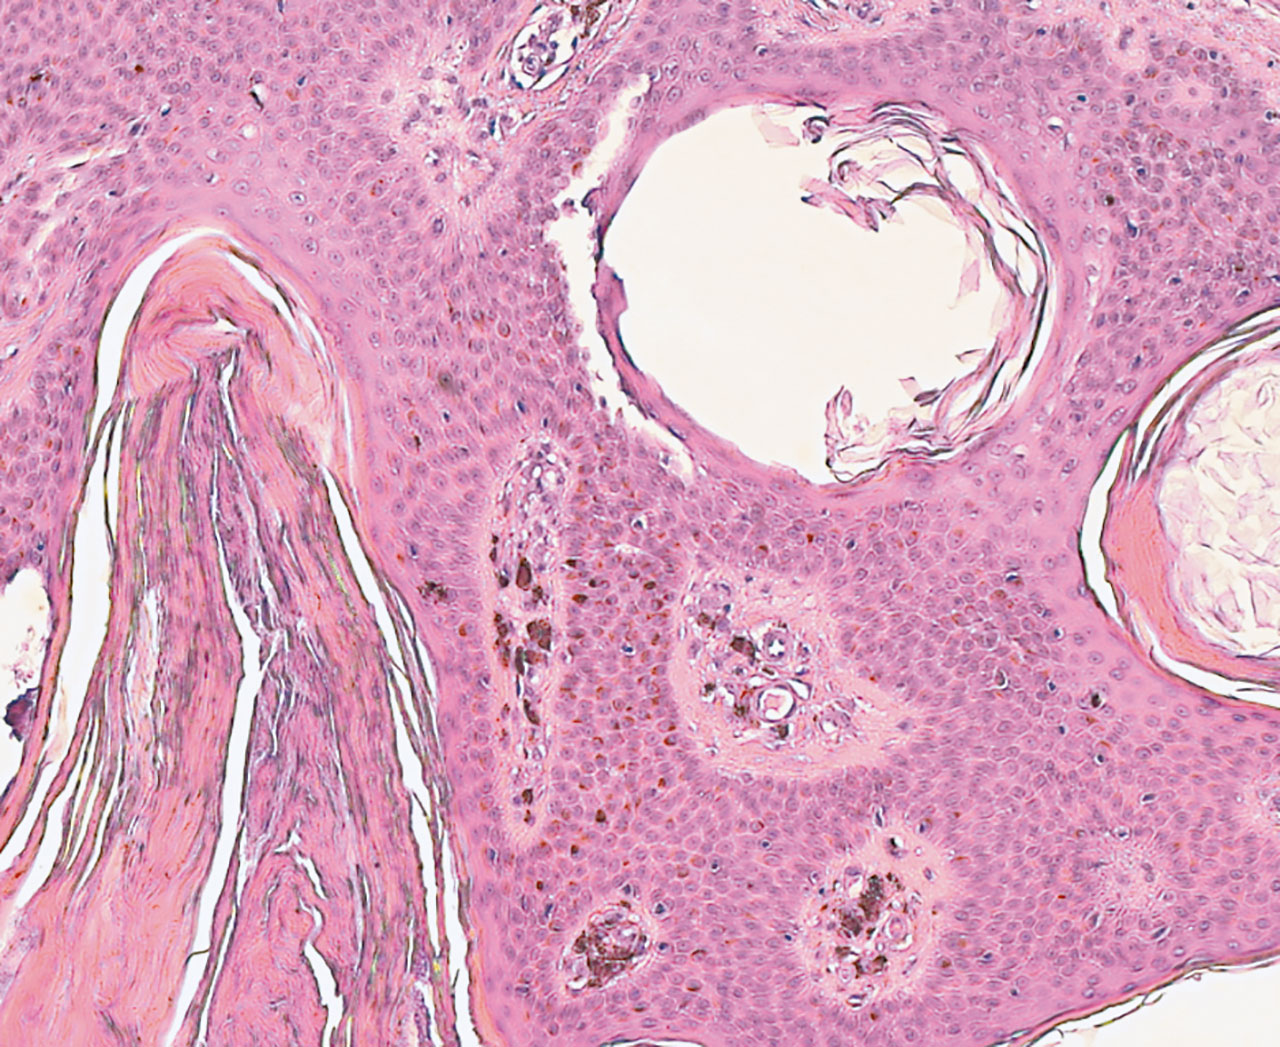 Abb. 15 Histologie einer seborrhoischen Keratose  (Hämatoxylin-Eosin-Färbung, 10-fache Vergrößerung). Neben adenoiden Proliferationen und multiplen hyperkeratotischen Hornperlen ist eine deutliche melanozytäre Hyperpimentierung zu erkennen.